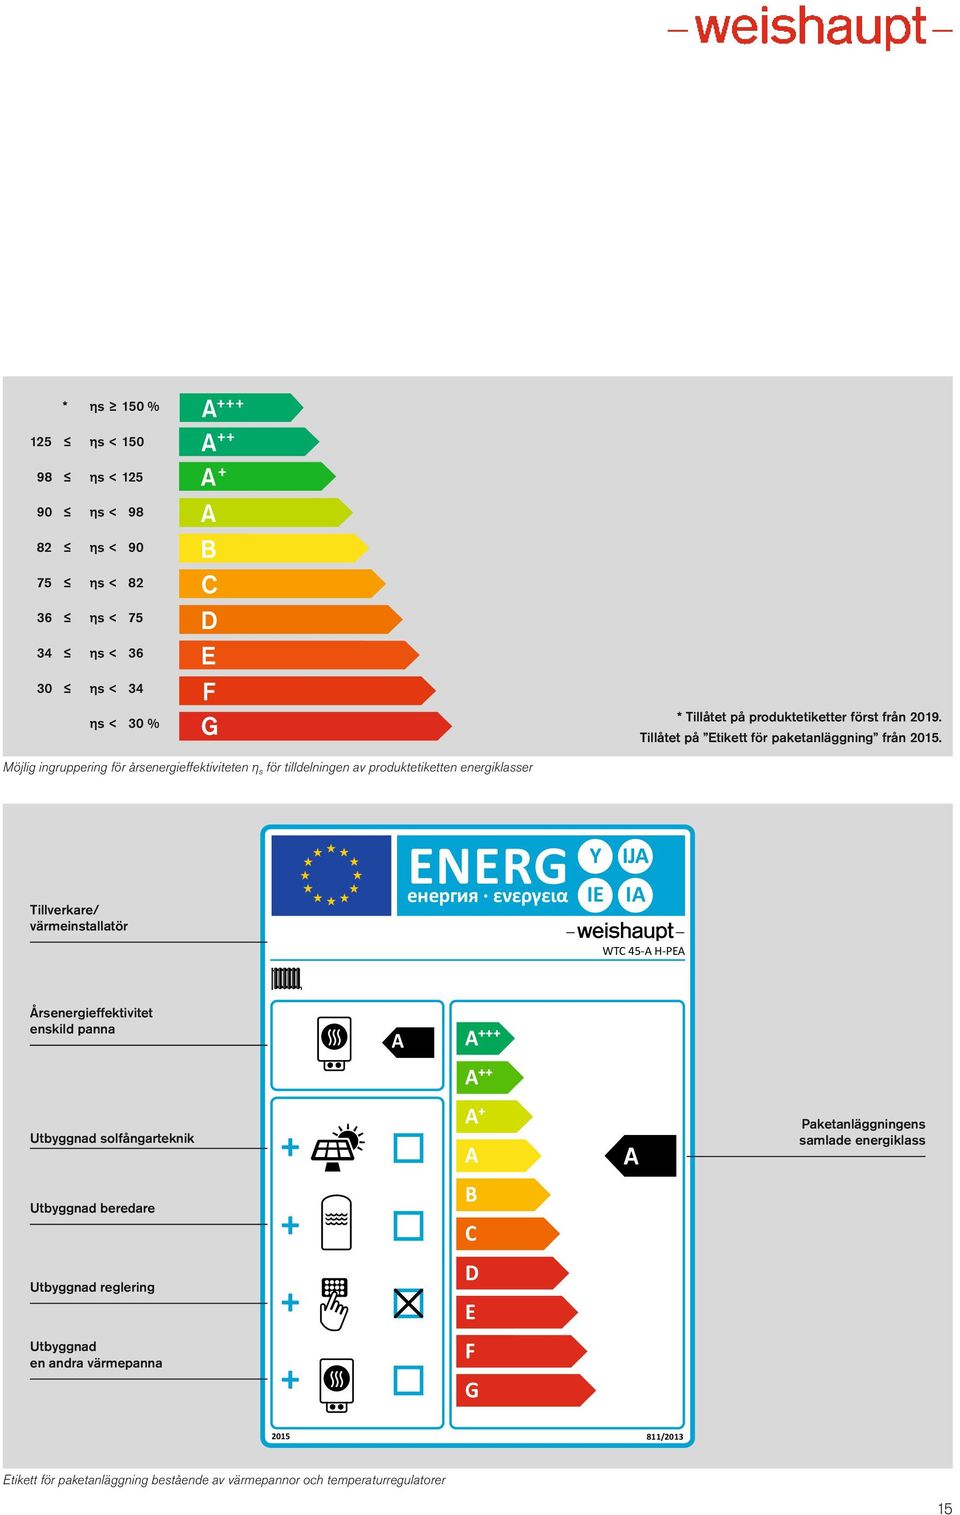 Möjlig ingruppering för årsenergieffektiviteten η s för tilldelningen av produktetiketten energiklasser Tillverkare/ värmeinstallatör ENERG Y IE IJA IA WTC 45-A H-PEA